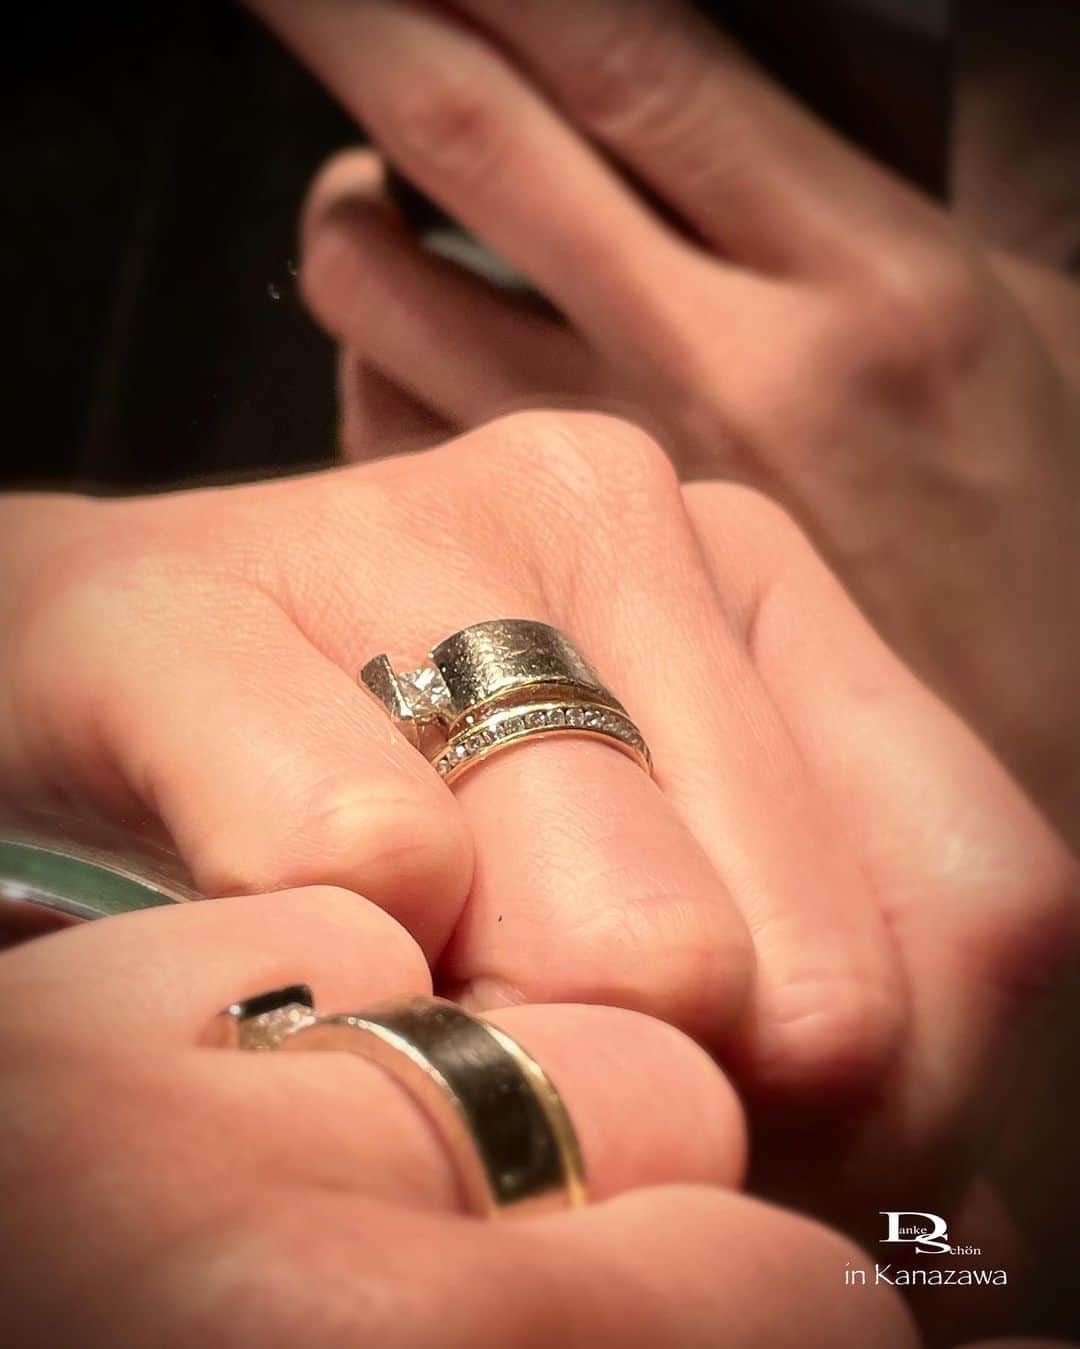 Danke schön ダンケ 金沢 結婚指輪 鍛造さんのインスタグラム写真 - (Danke schön ダンケ 金沢 結婚指輪 鍛造Instagram)「・ ・ ハイ🙌🏻 今日のバウアーさんは コレにします。 ・ ・ 直径2cm余りの「輪っか」が 織り成す世界 ・ ・ いざ！一つ選ぼうとすると 皆さん一喜一憂する訳です🤭 ・ ・ そして、どのお店も 「うちの子可愛いでしょ〜」と ガンガン写真を撮りアピールしながら訴えかける ・ ・ 私も少なからず 「うちの子可愛い」イヤ「可愛い」と言うより 「イケメン揃い😆」と内心思ってはいますが ・ ・ 📷2:分かりやすいかな？と解説 同じ指輪に見えないのでは？ ・ ・ コレは個々のモデルの持ち味を 最大限に引き出して ・ ・ 今も尚🙌🏻 見え方・つけ方を楽しむ ・ ・ 非対称モデルは なかなか面白いのです。 ・ ・ 指輪を選ぶ時こんな見え方 チェックしてますか？ ・ ・ ショーケースの上から見ていても 分からない世界観ですよ。 ・ ・ 気分に合わせ TPOに合わせて ・ ・ あっち向き こっち向き ・ ・ 時には…全部隠して 地金だけ…。 ・ ・ こうやって楽しんで かれこれ22年目& 11年目の私物 ・ ・ 飽きる事なく…思いも色褪せる事なく まだまだ人生と共に使い込んで 年輪を刻むって感じ ・ ・ コレが又！ 「指輪の小傷」と「手のシワ」が マッチングして来たとここ最近気付く🤭 ・ ・ コレを「貫禄」と言うのかも😆 ・ ・ こうなった時に初めて 「私の指輪」と胸を張って言える。 ・ ・ 美しいだけでは飽きる 使い込む時間にこそ その指輪の「価値が宿り」それと共に 愛着が湧いてくると思うのです。 ・ ・ 選んだ時・買った時以上に その指輪愛せてますか？ ・ ・ 選んで「燃え尽きて症候群」に なってませんか？ ・ ・ 今から買おうと思っている指輪 愛せますか？ ・ ・ 直径2cm余りの「輪っか」 されど輪っかに 熱くなれる我が人生なかなかでしょ🤭 ・ ・ 店の投稿とは思えない🤭 私物の方がよりリアルに伝わるかな？と思いの投稿 失礼しました🙇🏻‍♂️ ・ ・ ・ ・ ・ 【鍛造削り出し】 🇩🇪クリスチャンバウアー 専門店 ・ ・ ワンランク上をいくノウハウの クリスチャンバウアーの選び方なら 『Danke schön 』 ・ ・ ・ —— 𝐃𝐚𝐧𝐤𝐞——— ▪︎ Instagramプロフィール 🔜 @danke2005  —————————————————————𝐒𝐜𝐡⍥𝐧——— ・ ・ #クリスチャンバウアー金沢 #鍛造指輪 #鍛造リング #結婚指輪 #結婚指輪オーダー #切削加工 #結婚指輪探し #結婚指輪選び #指輪探し #指輪選び #マリッジリング #結婚指輪金沢 #金沢結婚指輪 #セカンドリング #結婚指輪買い替え #地金屋鍛造 #ブライダルリング #結婚記念日 #ベビーリング #ドイツリング #自分へのご褒美 #経年変化を楽しむ   ------------------------------------------✈︎ ---------  鍛造削り出し 🇩🇪クリスチャンバウアー 専門店 『𝐃𝐚𝐧𝐤𝐞 𝐬𝐜𝐡⍥𝐧』 ・ • 営業時間 am11:00〜pm9:00 • 定休日 : 木曜日 • 駐車場 : 店舗前OK • ご予約 : 優先 ・ ・ ——𝐃𝐚𝐧𝐤𝐞——————————————— ▪︎トップページ 🔜 @danke2005 ———————————————————-𝐒𝐜𝐡⍥𝐧—————」5月23日 12時10分 - danke2005